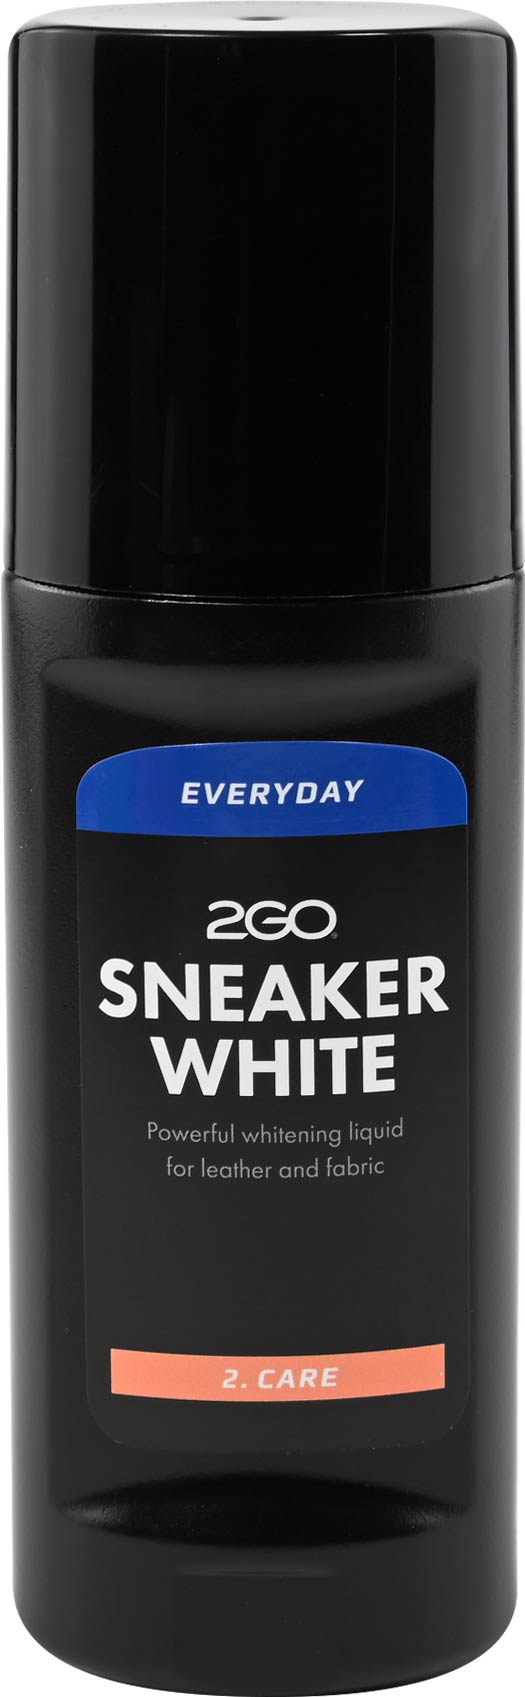 2GO - Sneaker White